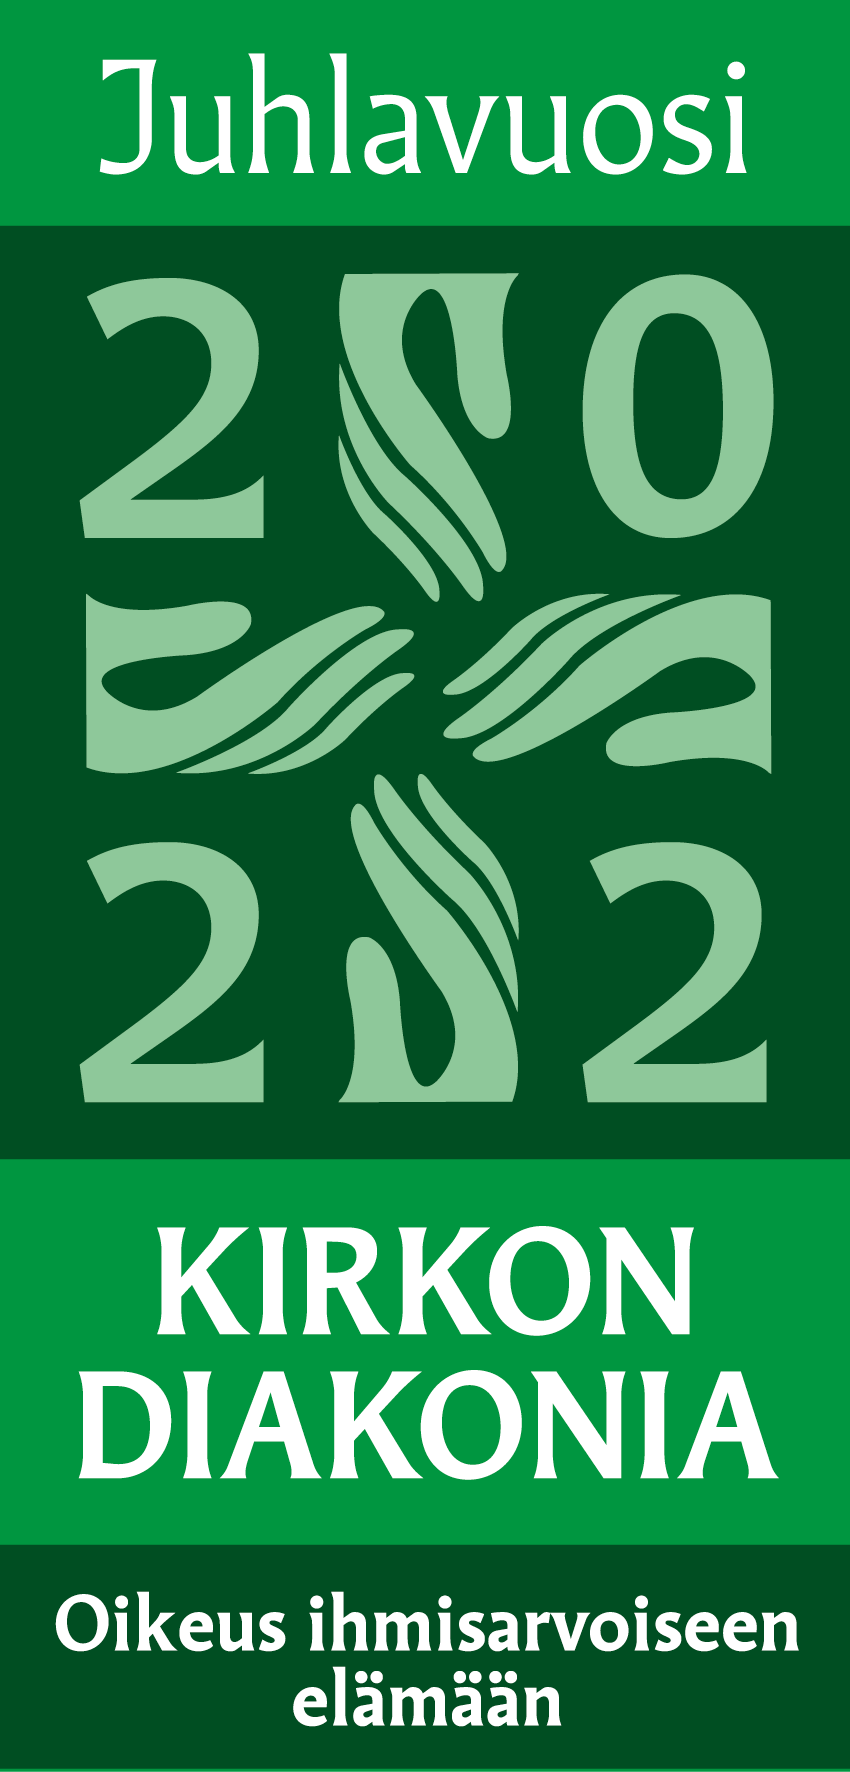 Logo: Kirkon diakonia, oikeus ihmisarvoiseen elämään, 2022 ja piirretyt kädet